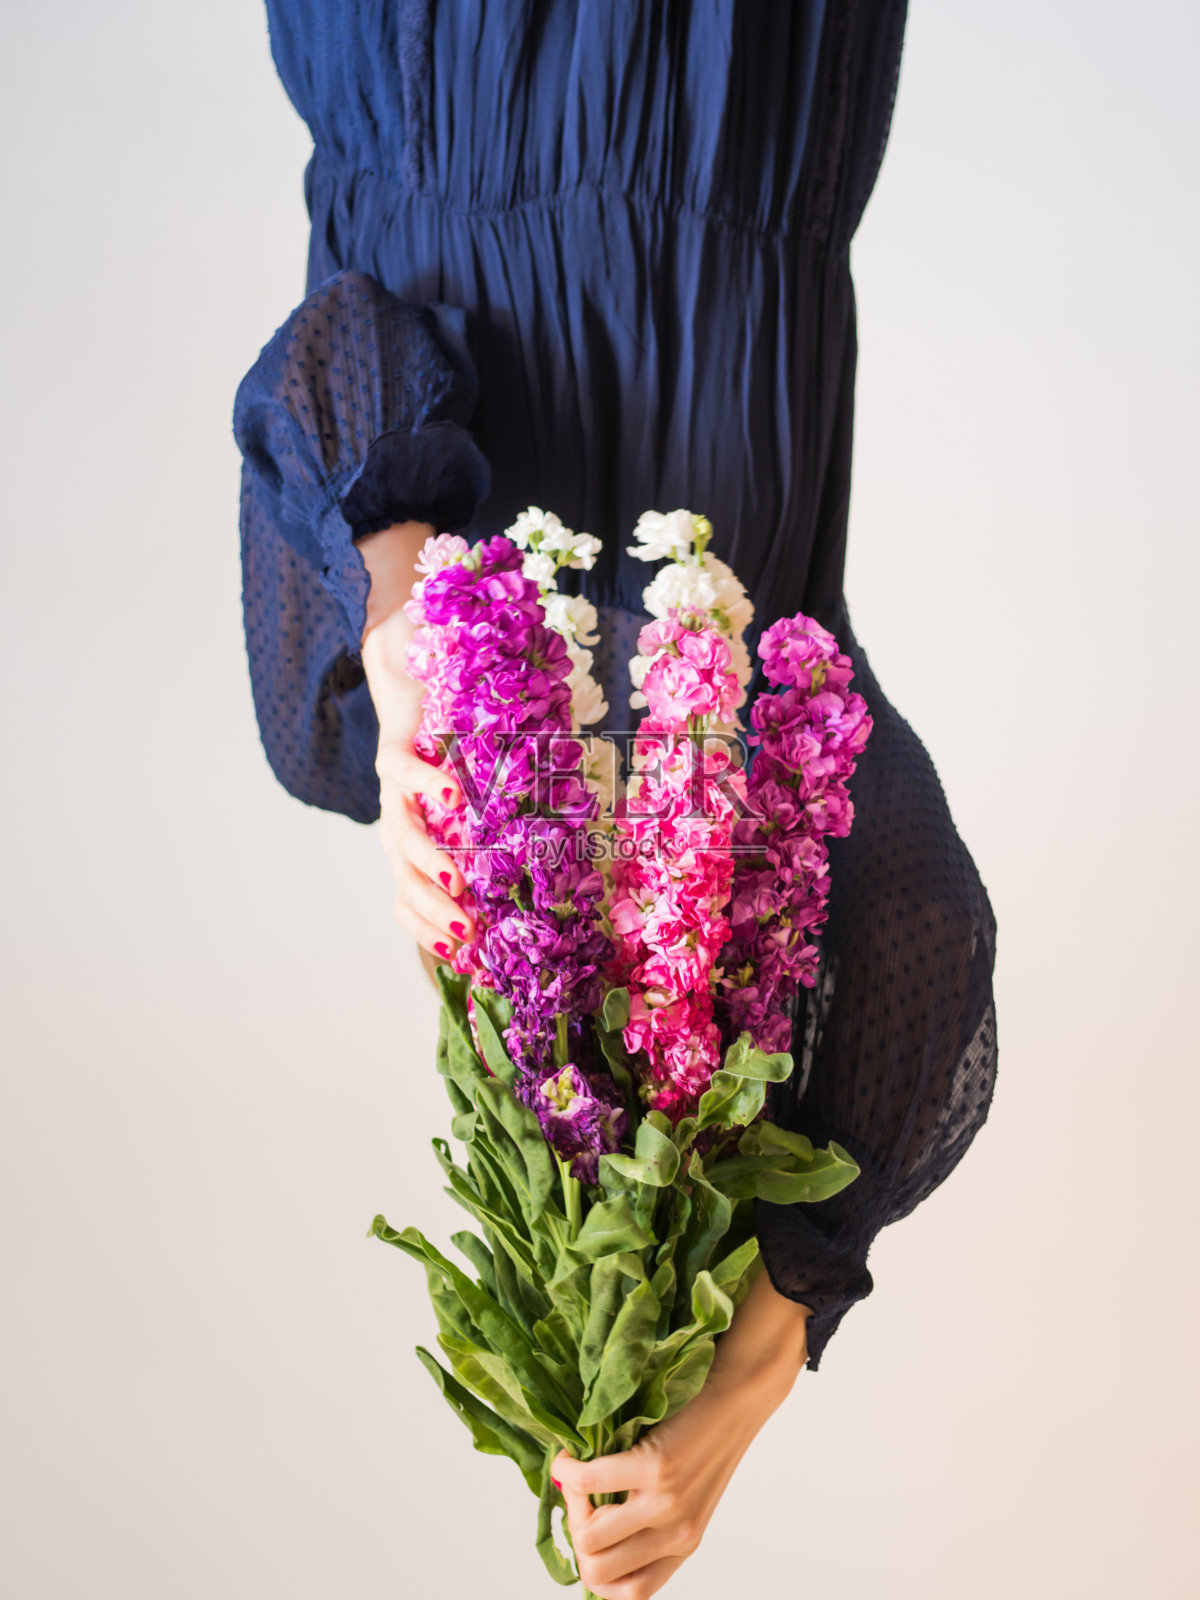 创意女性无脸肖像与一束花照片摄影图片